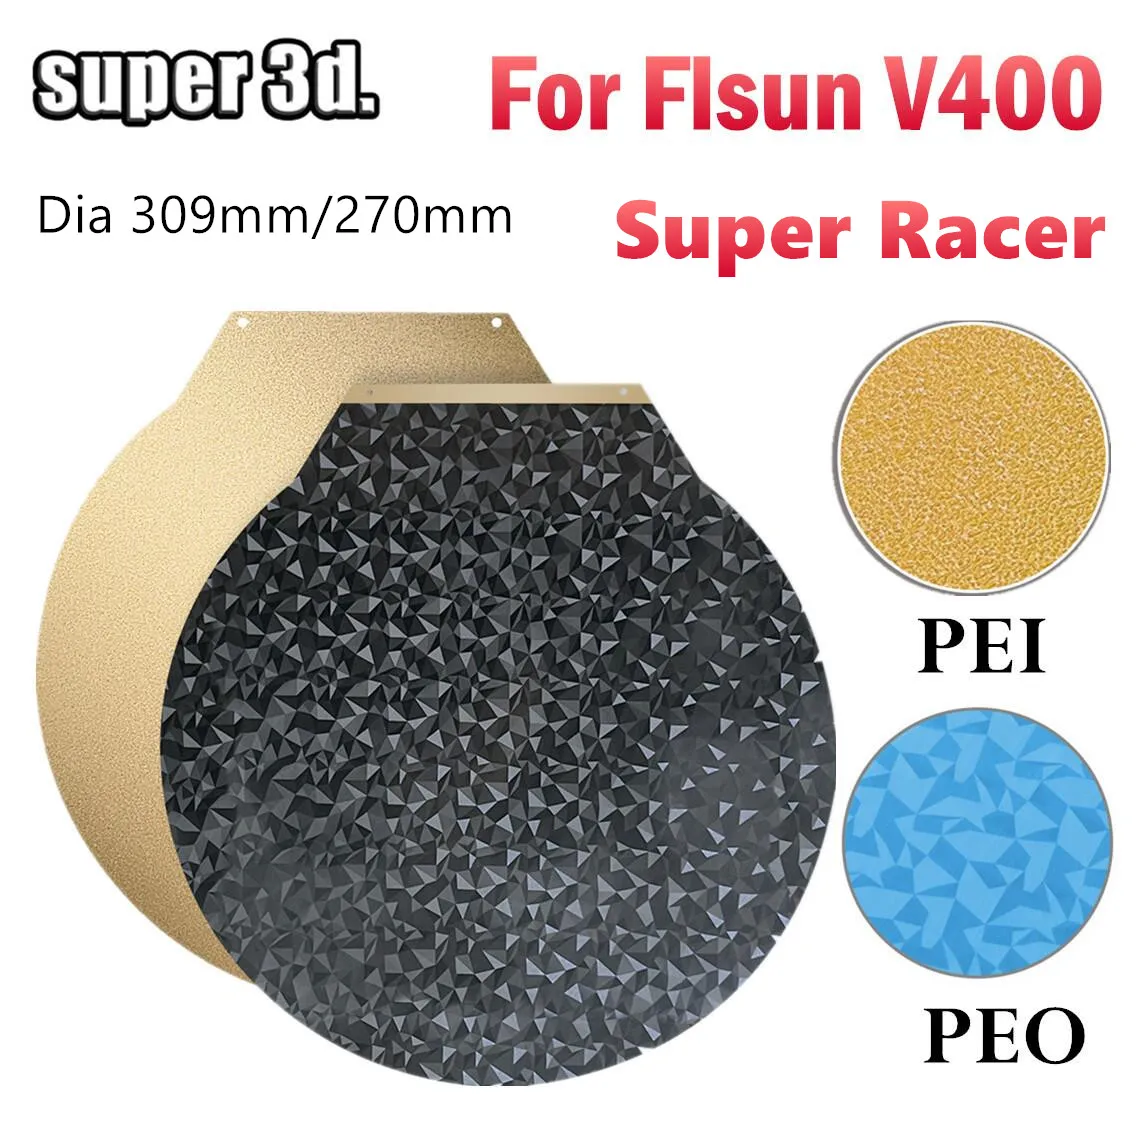 Flsun 슈퍼 레이서용 양면 마그네틱 스틸 PEO 시트, 3D 프린터 빌드 플레이트, Flsun V400 SR pei 용 라운드 PEO 플레이트